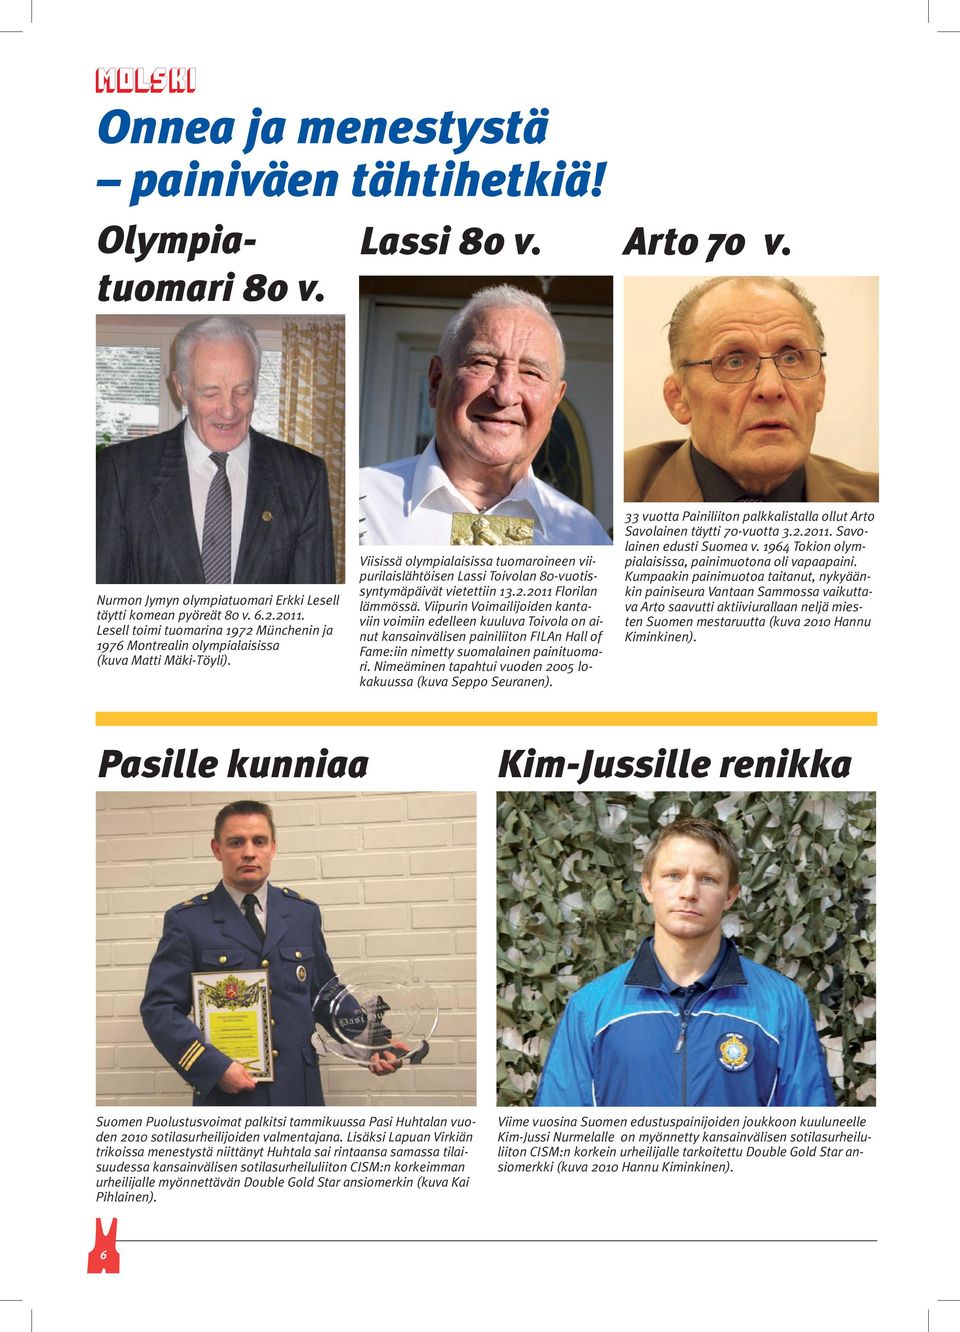 Viisissä olympialaisissa tuomaroineen viipurilaislähtöisen Lassi Toivolan 80-vuotissyntymäpäivät vietettiin 13.2.2011 Florilan lämmössä.